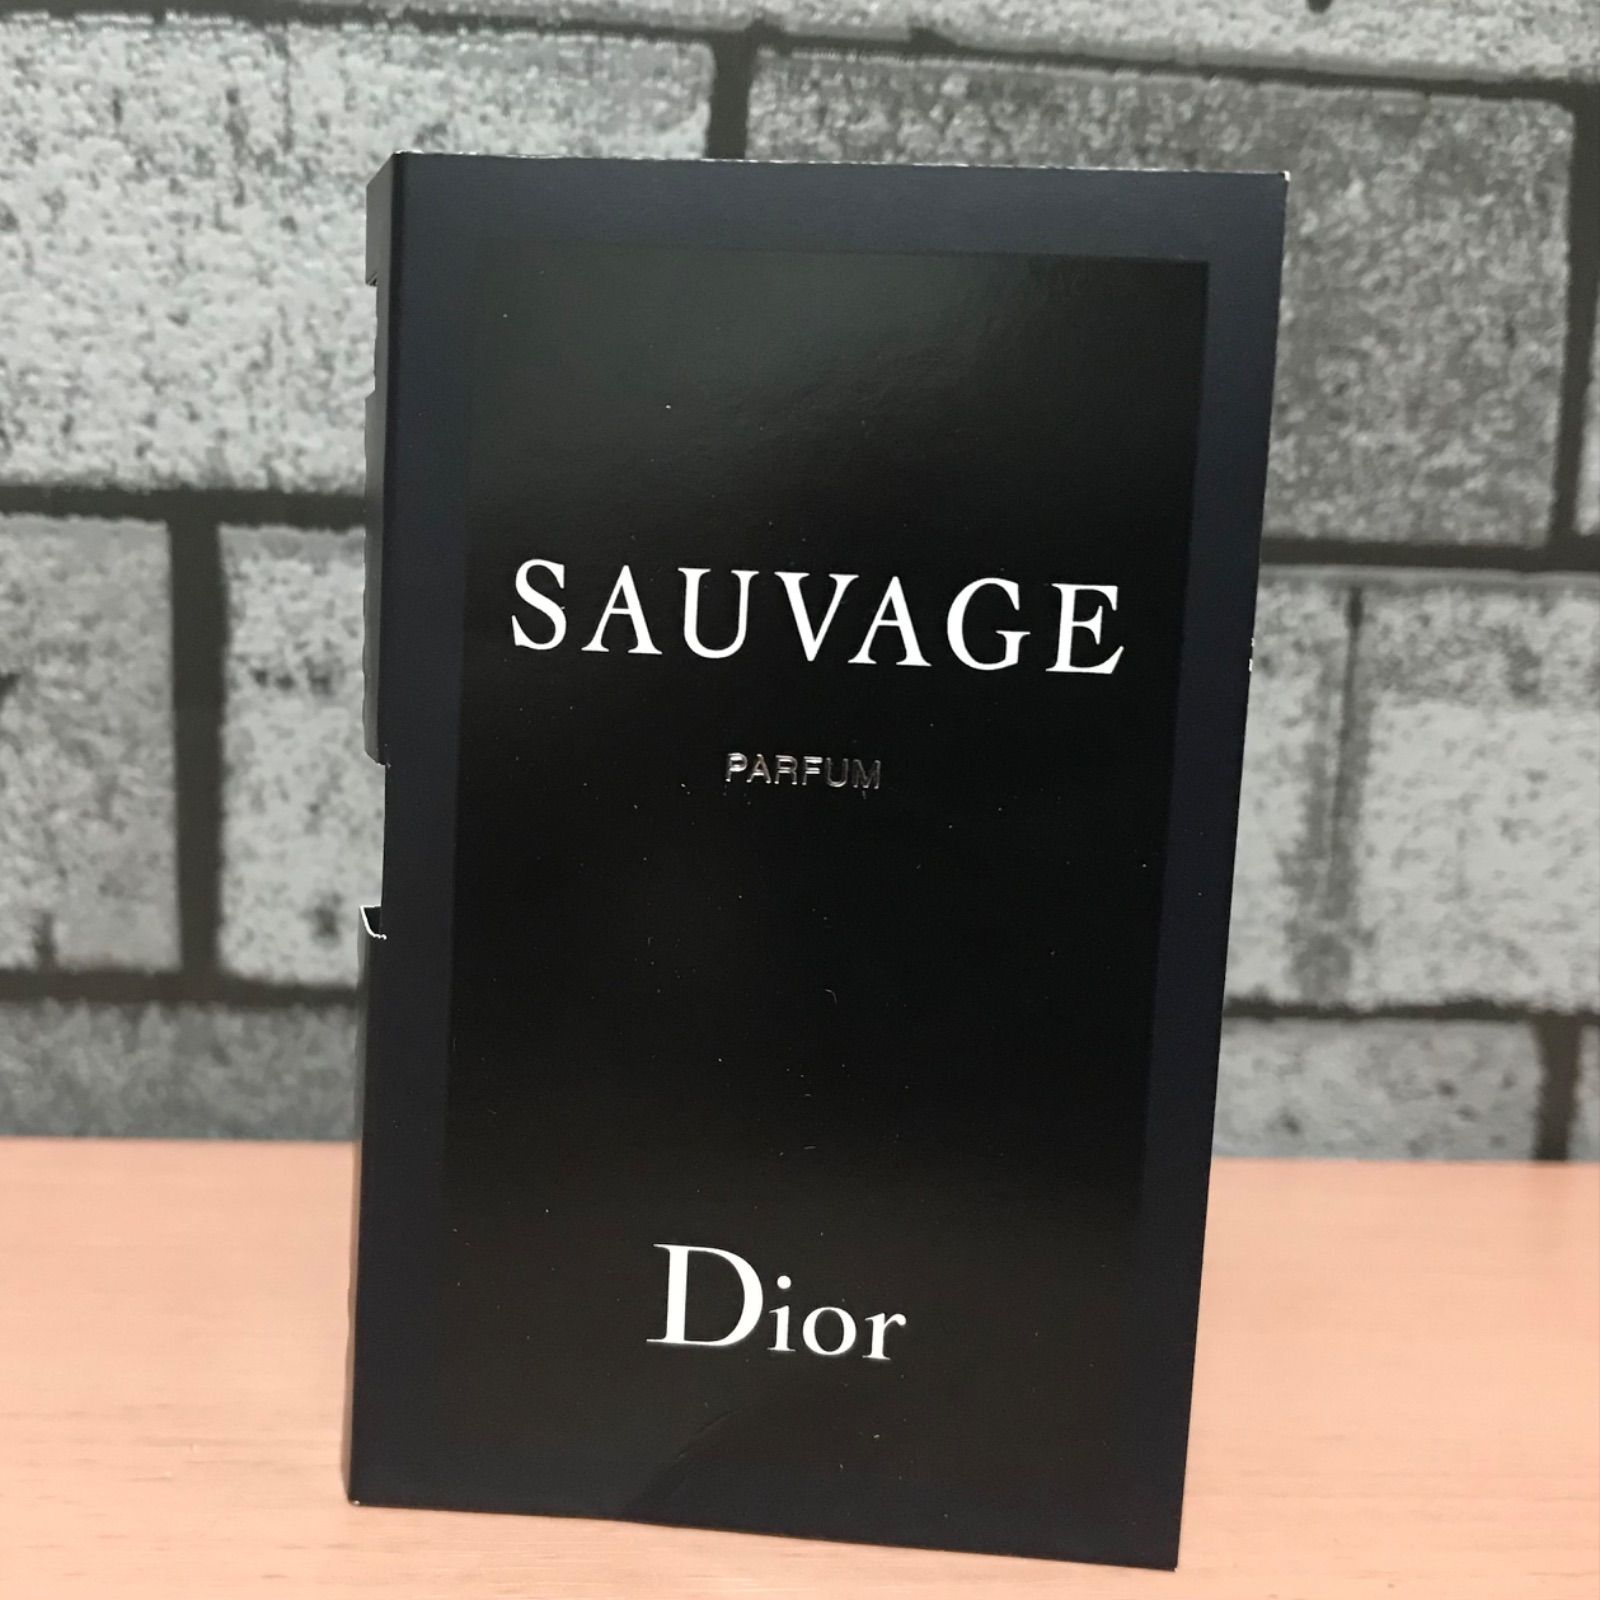 Dior ソヴァージュ パルファン サンプル - メルカリ